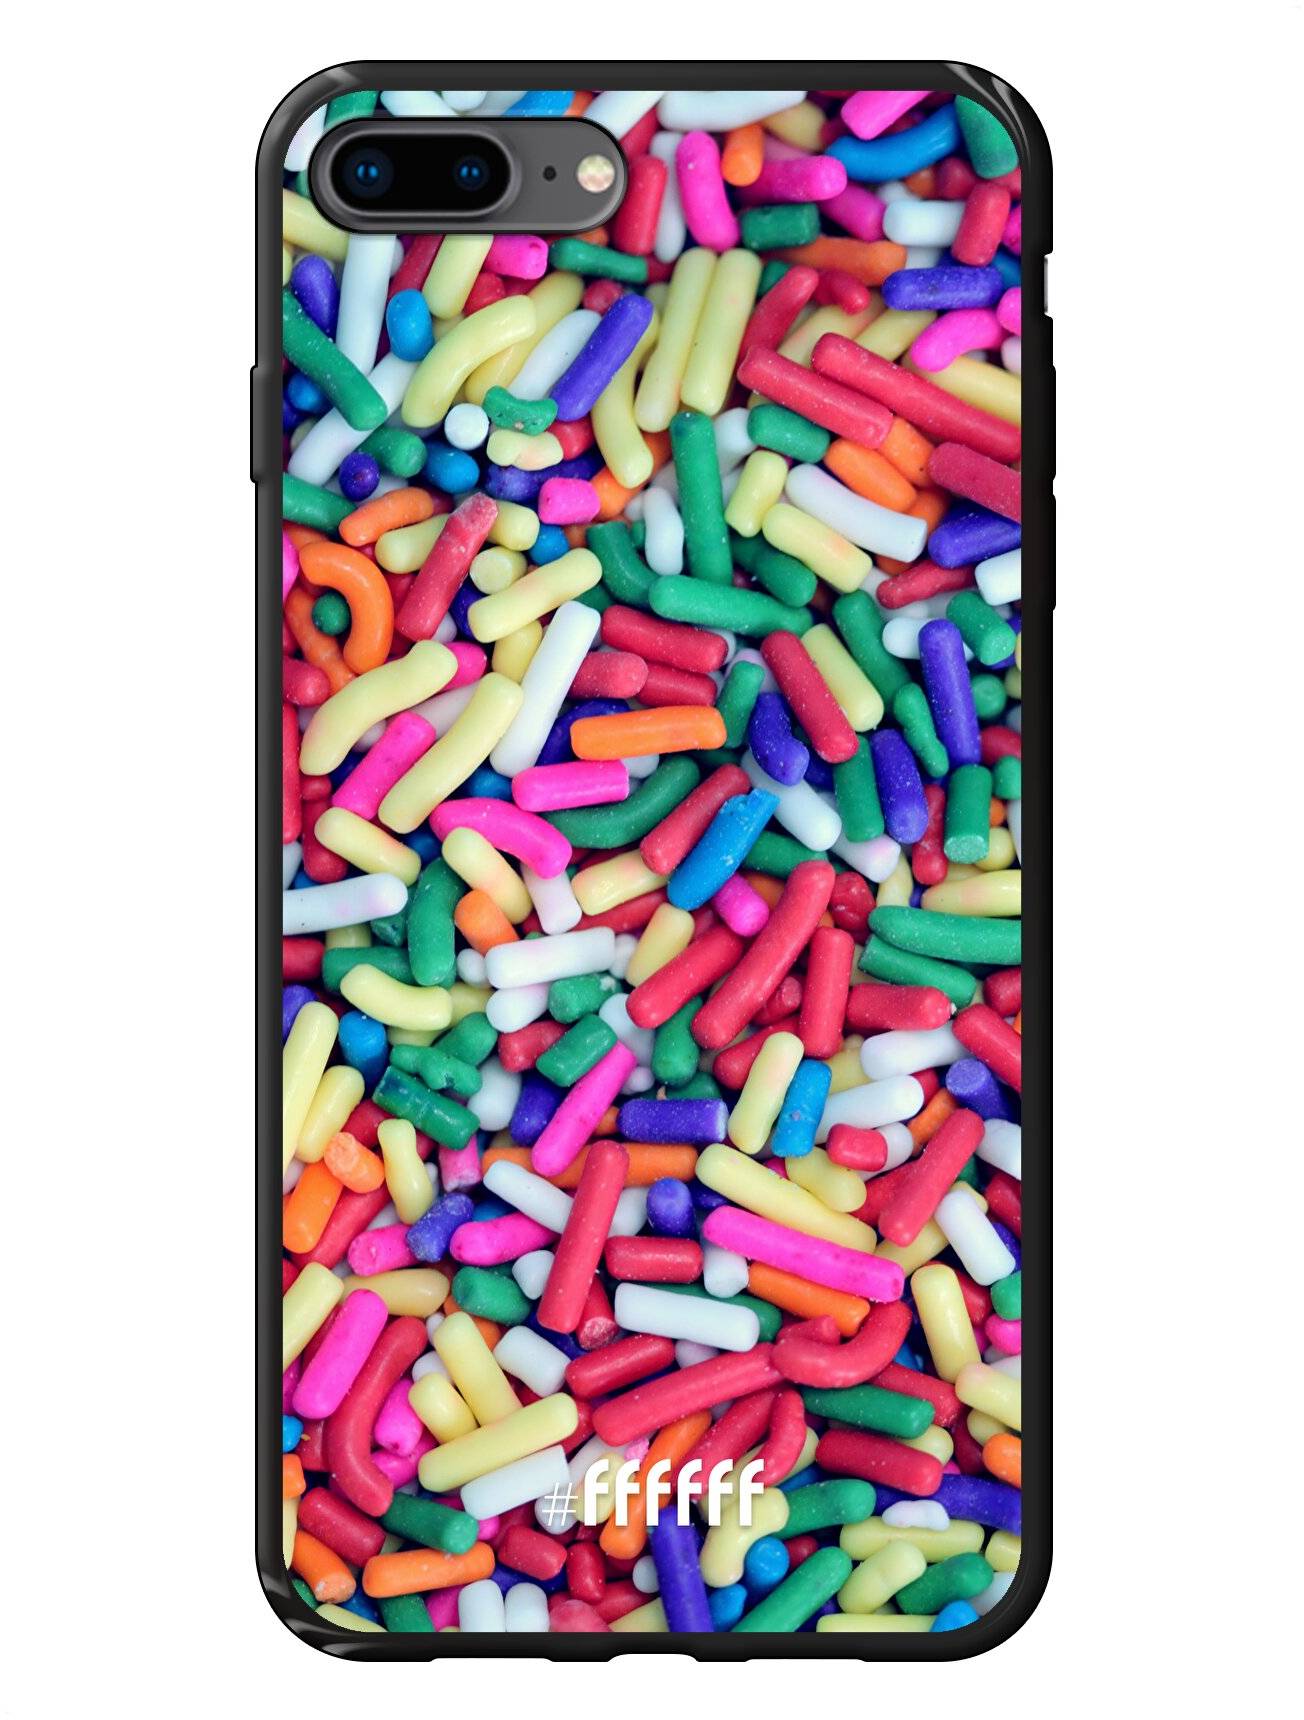 Sprinkles iPhone 8 Plus